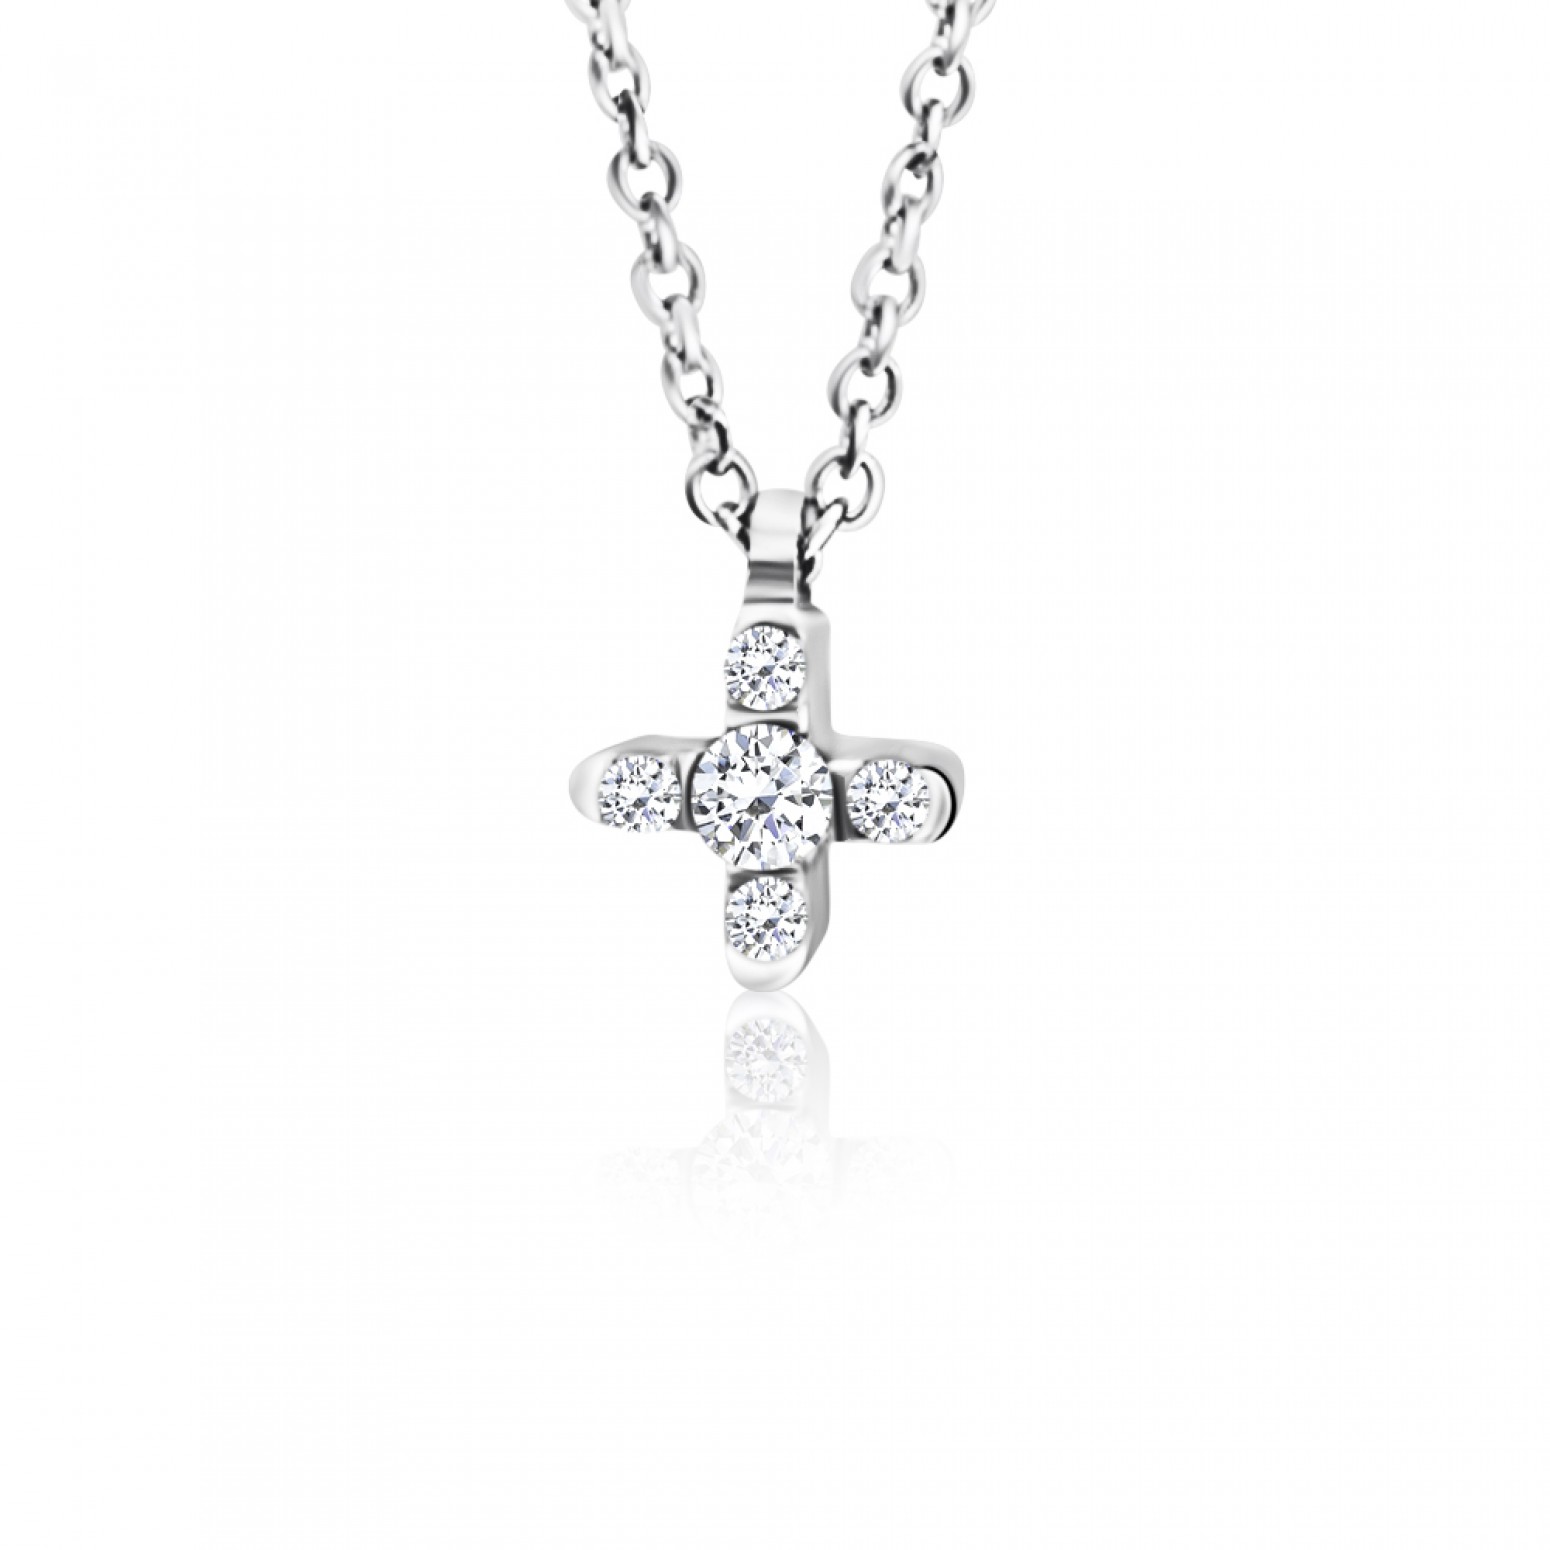 Cross necklace, Κ9 white gold with zircon, ko4935 NECKLACES Κοσμηματα - chrilia.gr